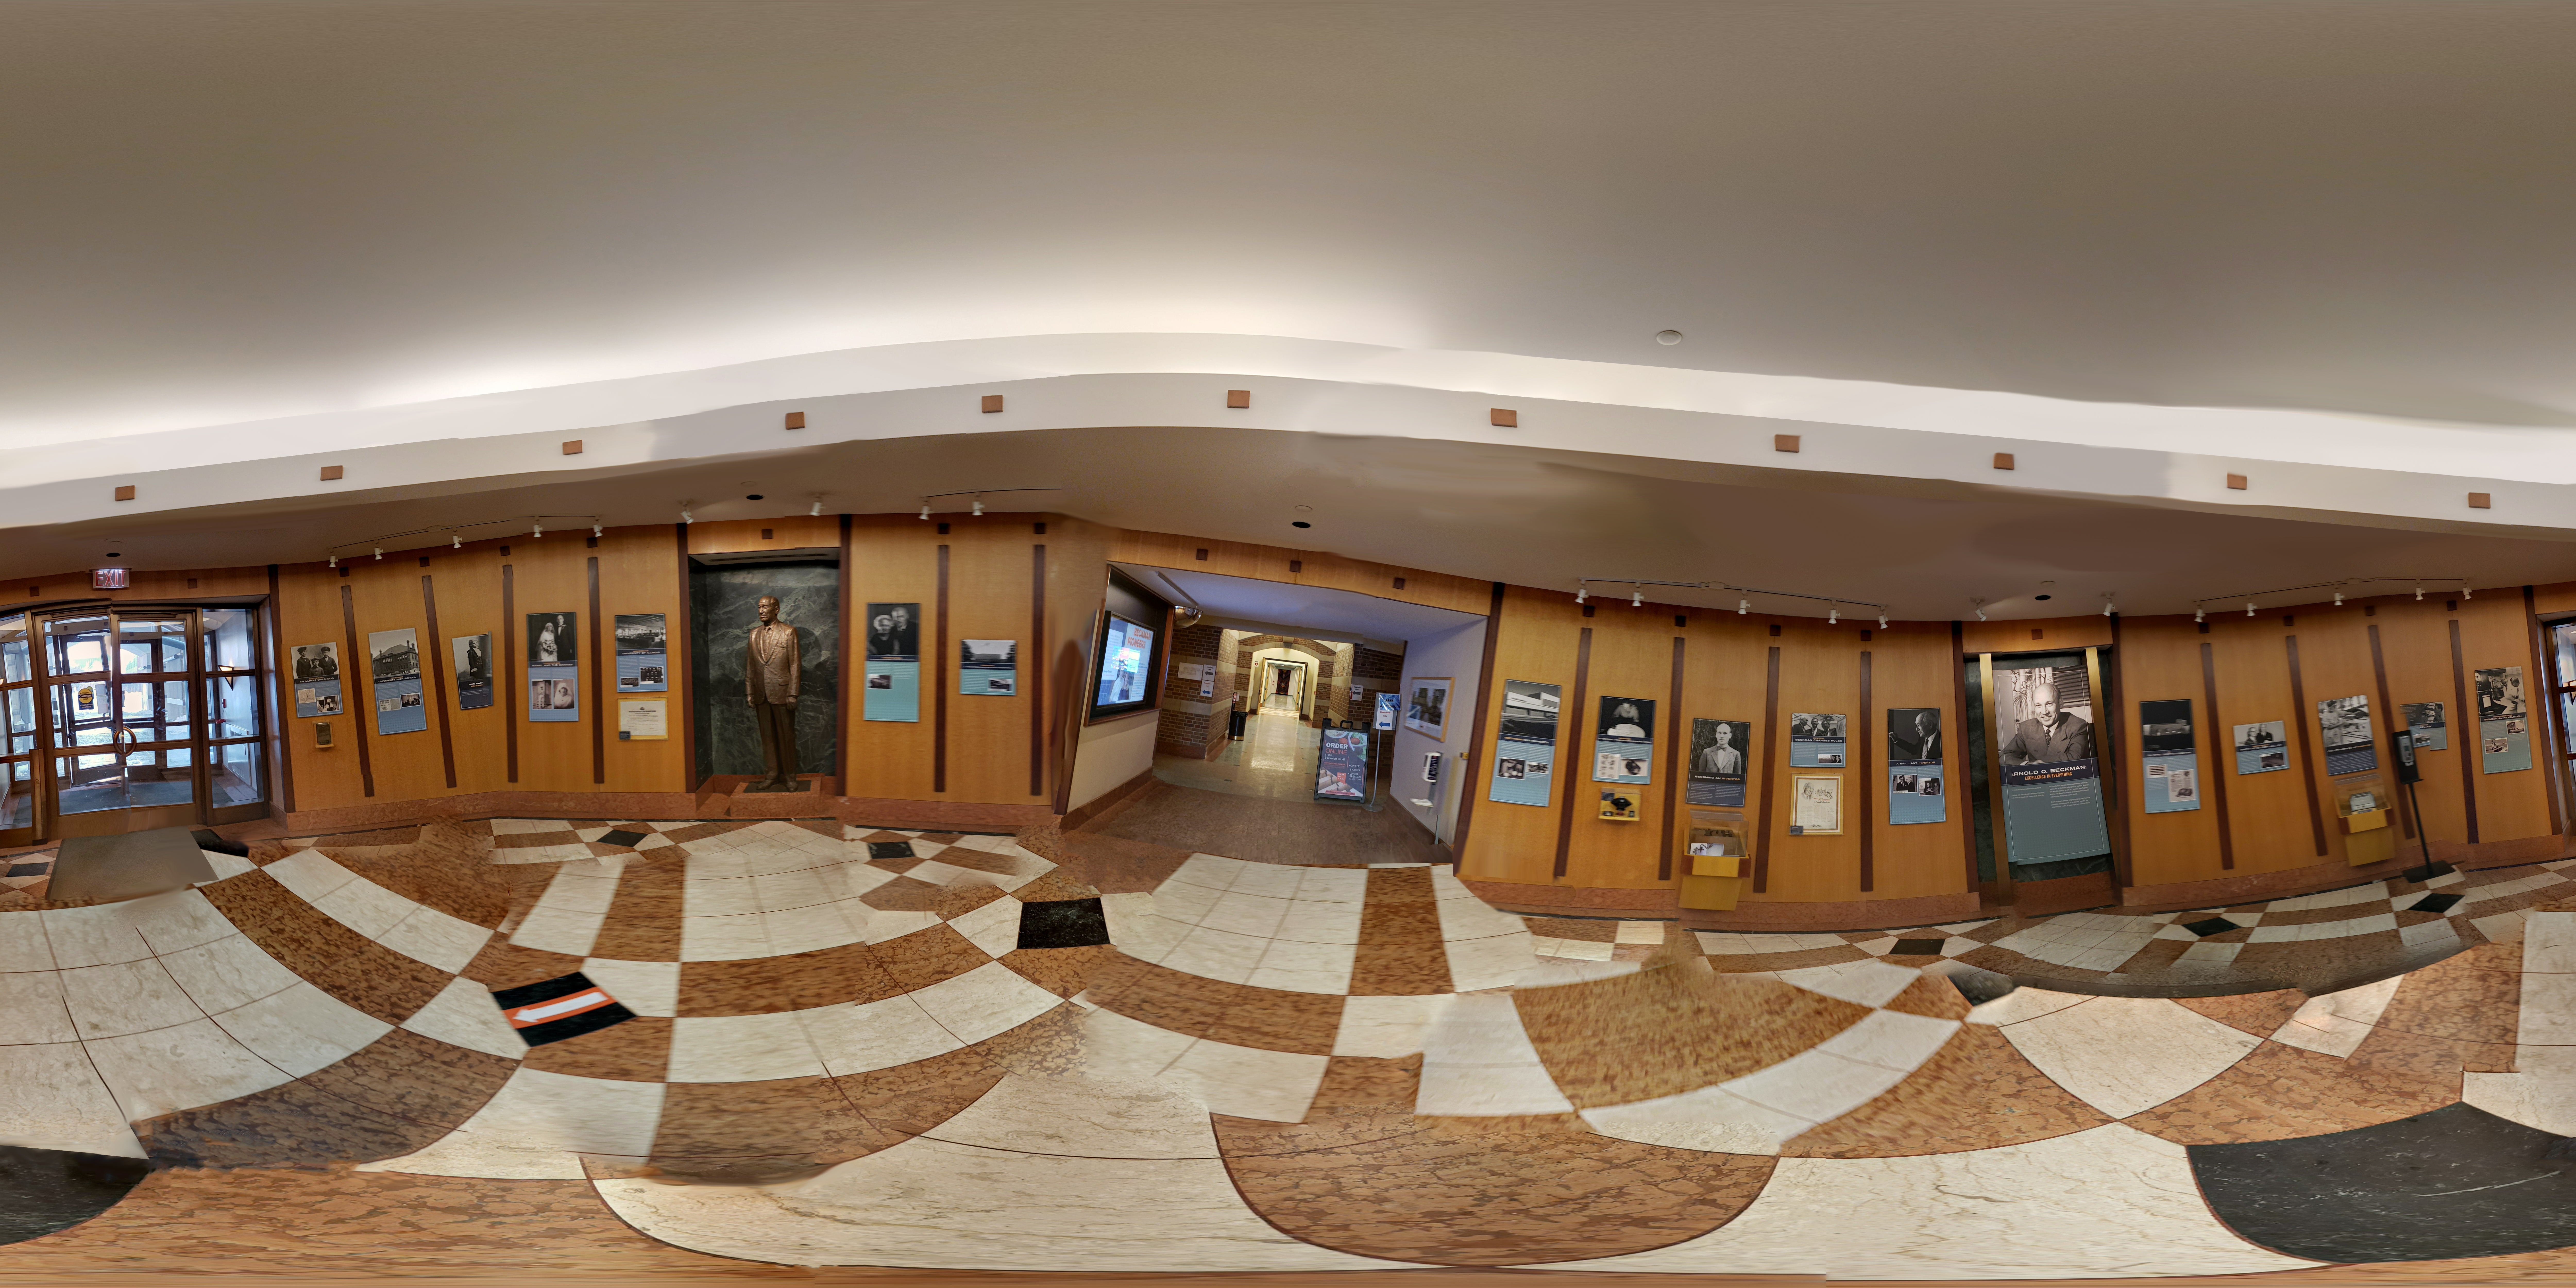 360-degree image of Beckman Institute rotunda